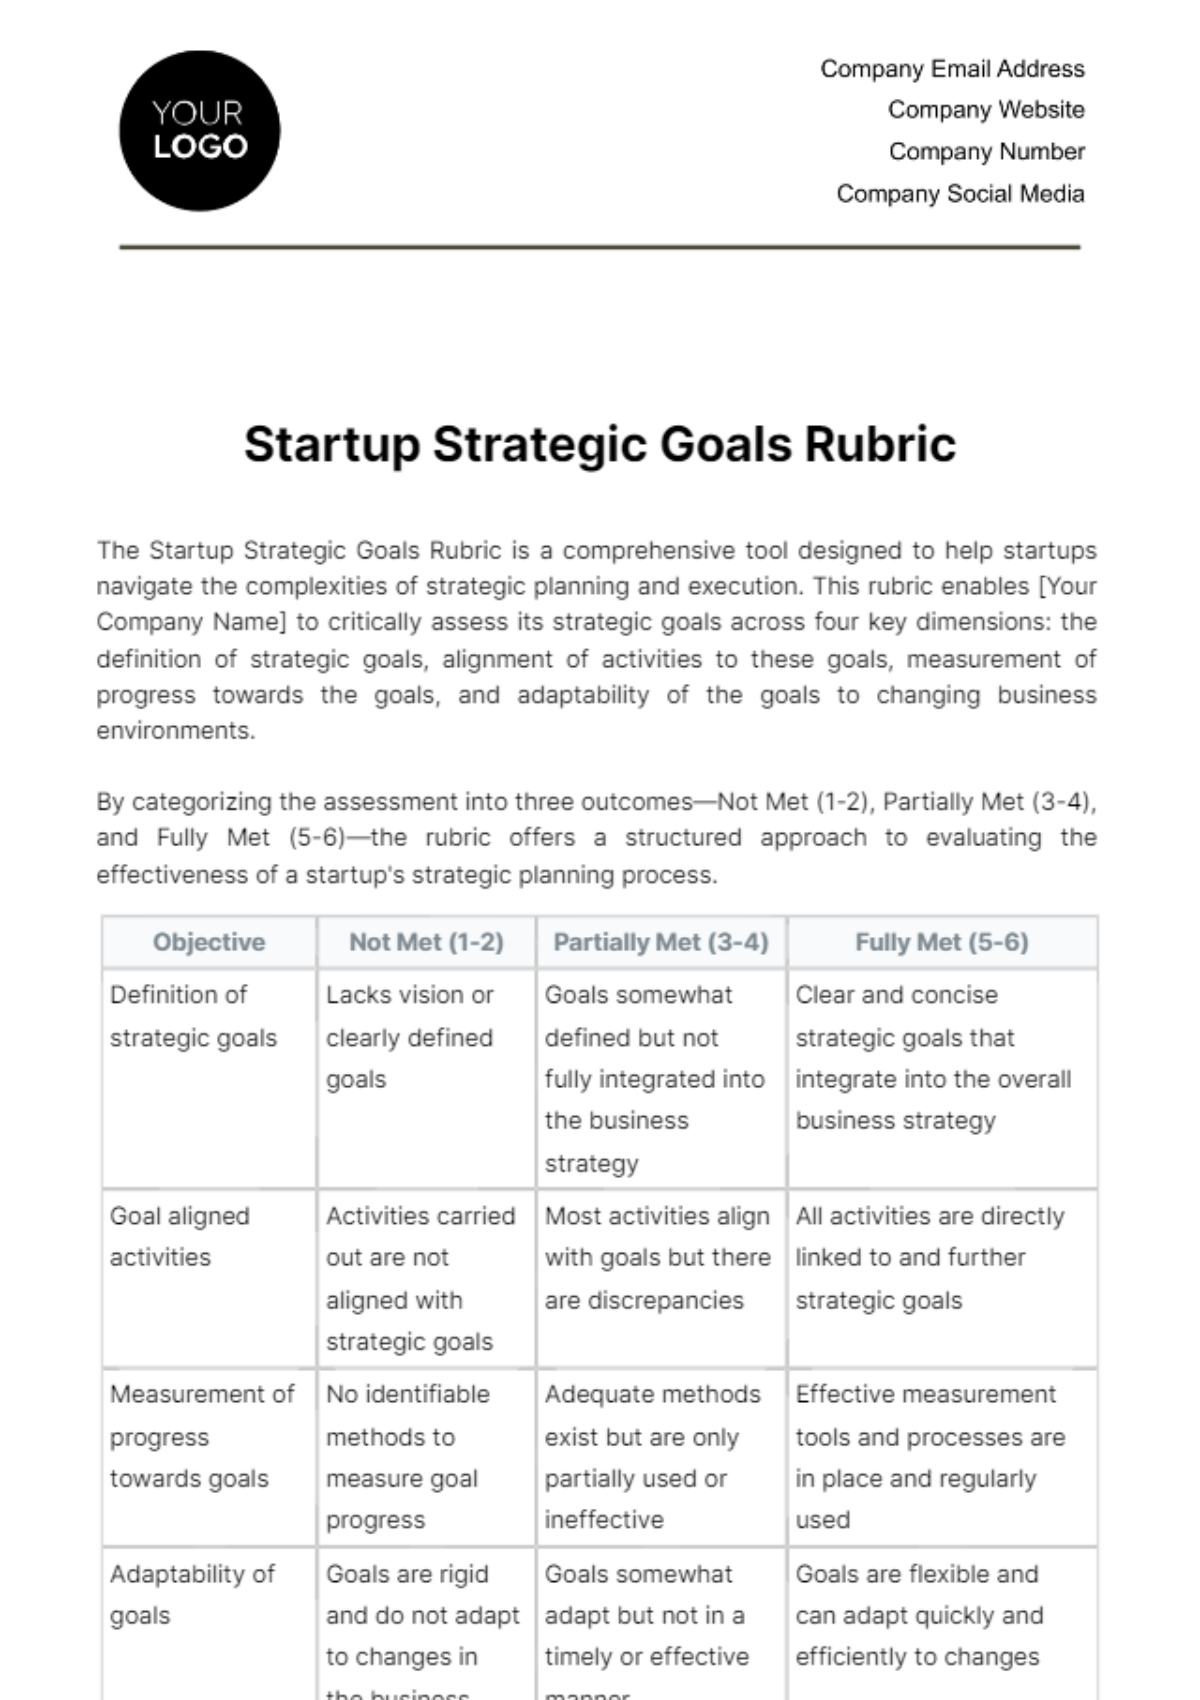 Startup Strategic Goals Rubric Template